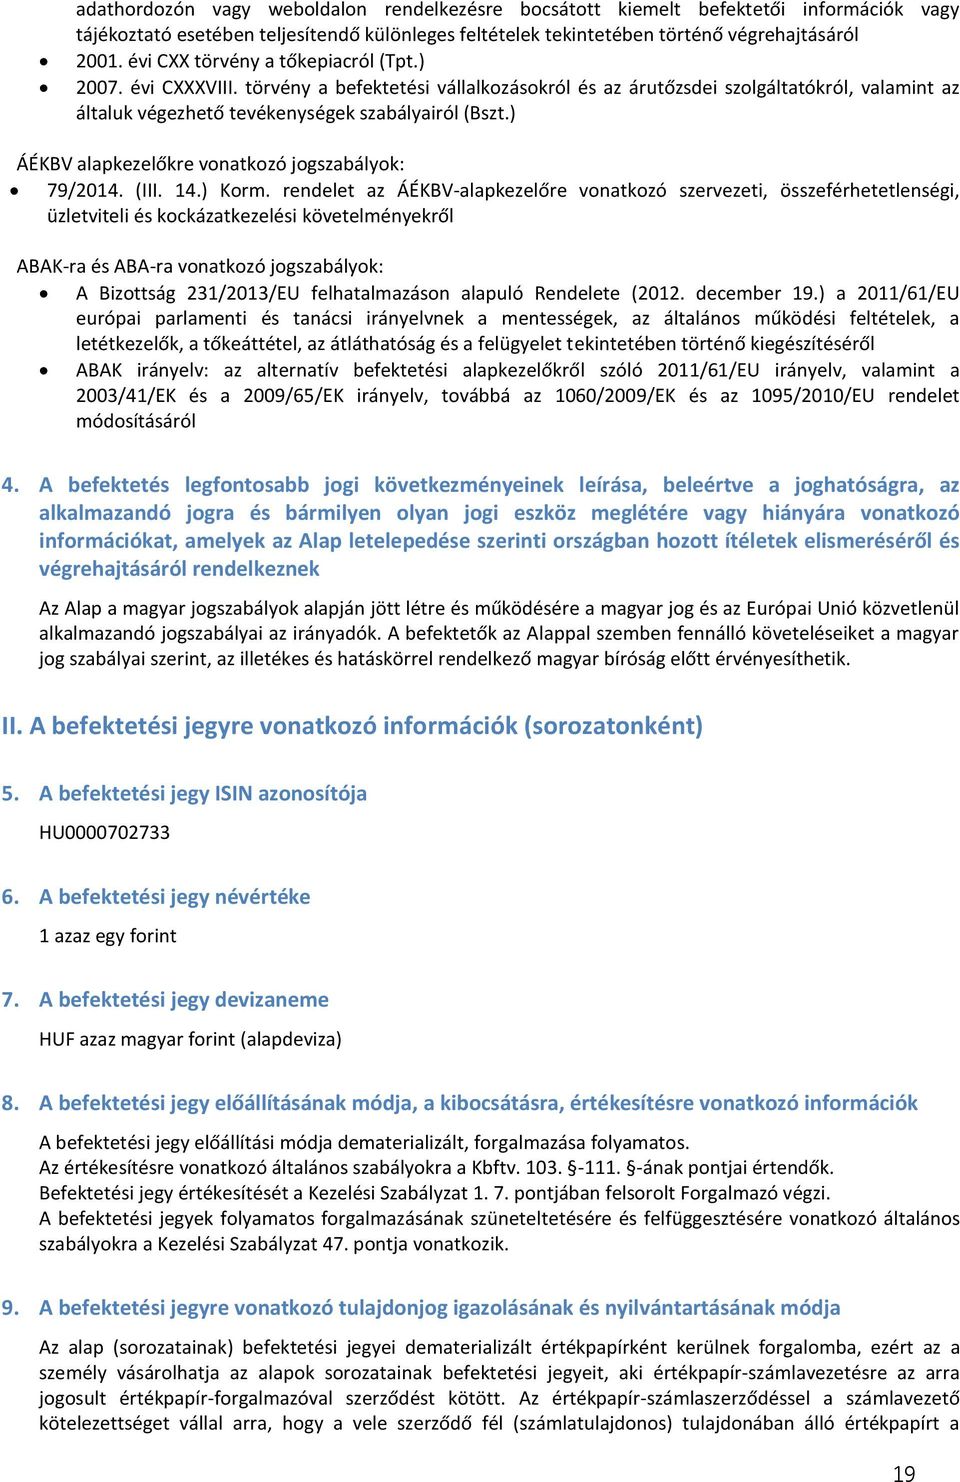 ) ÁÉKBV alapkezelőkre vonatkozó jogszabályok: 79/2014. (III. 14.) Korm.